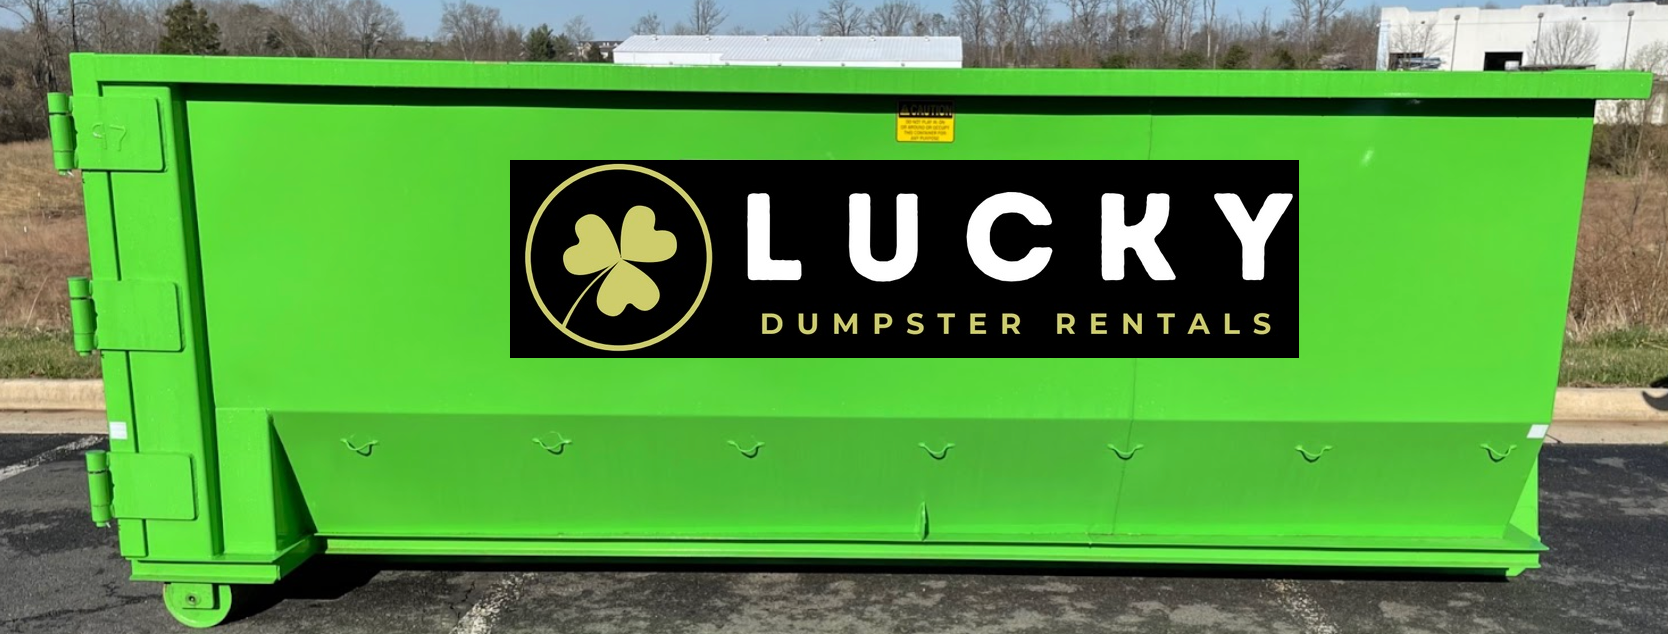 Sharpsburg Dumpster Rentals - Lucky Dumpster of Sharpsburg, GA